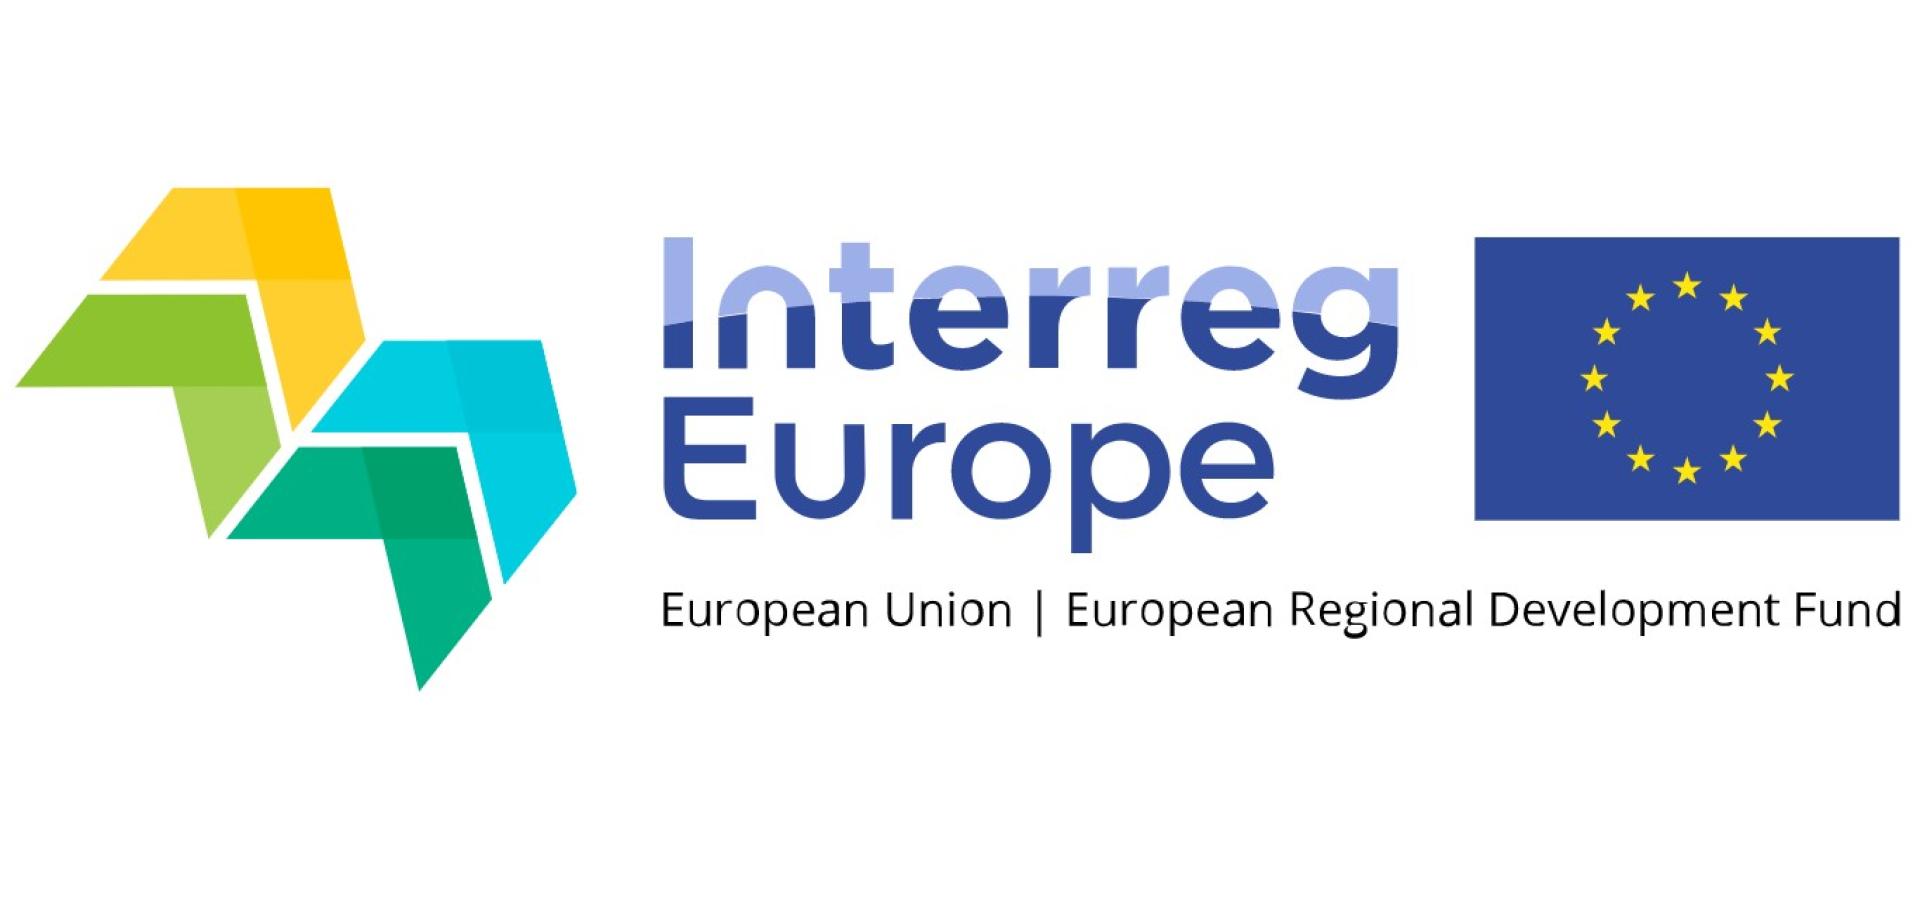 Inauguracja programu Interreg Europa 2021-2027, 24-25 listopada br.  - zobacz więcej